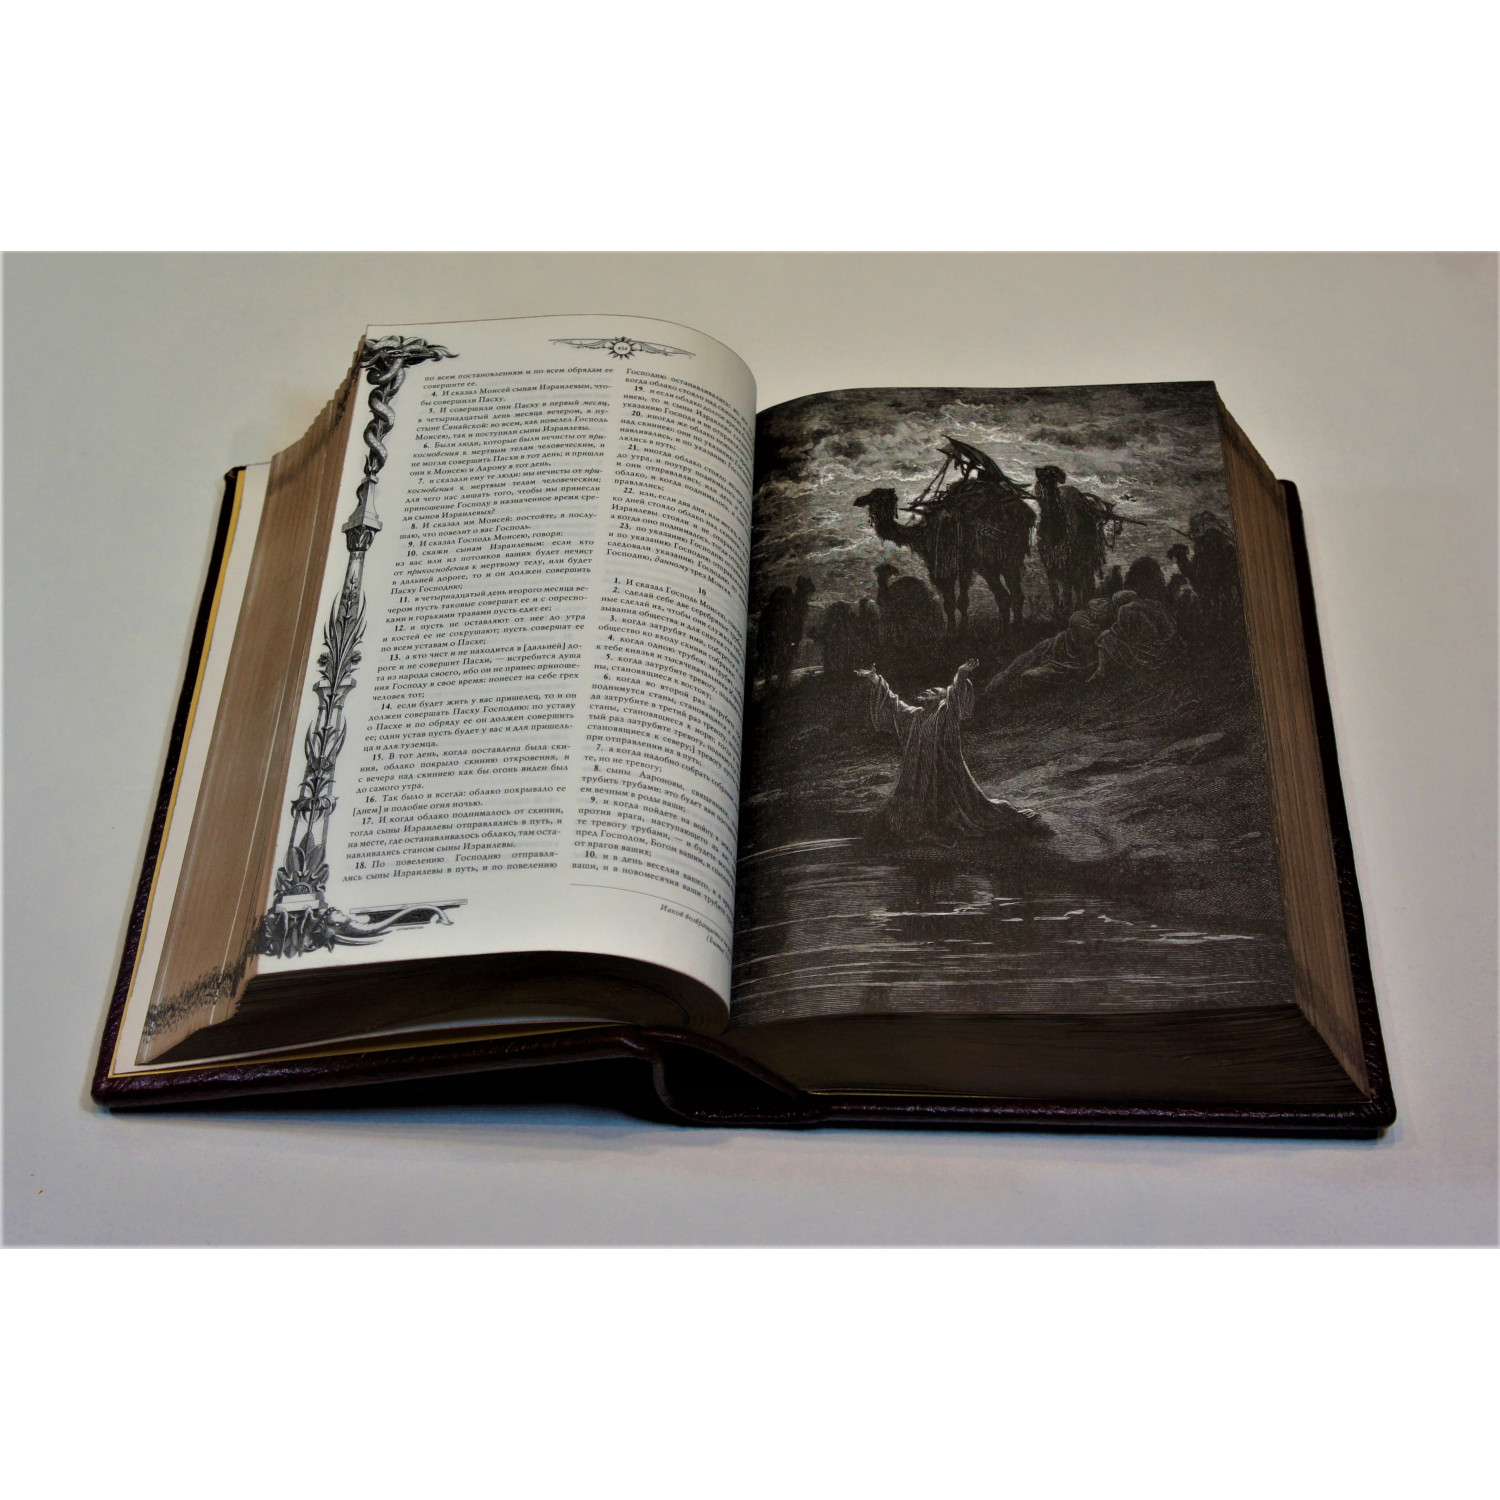 Библия. Книги Священного писания Ветхого и Нового завета с иллюстрациями Гюстава Доре в кожаном переплете ручной работы